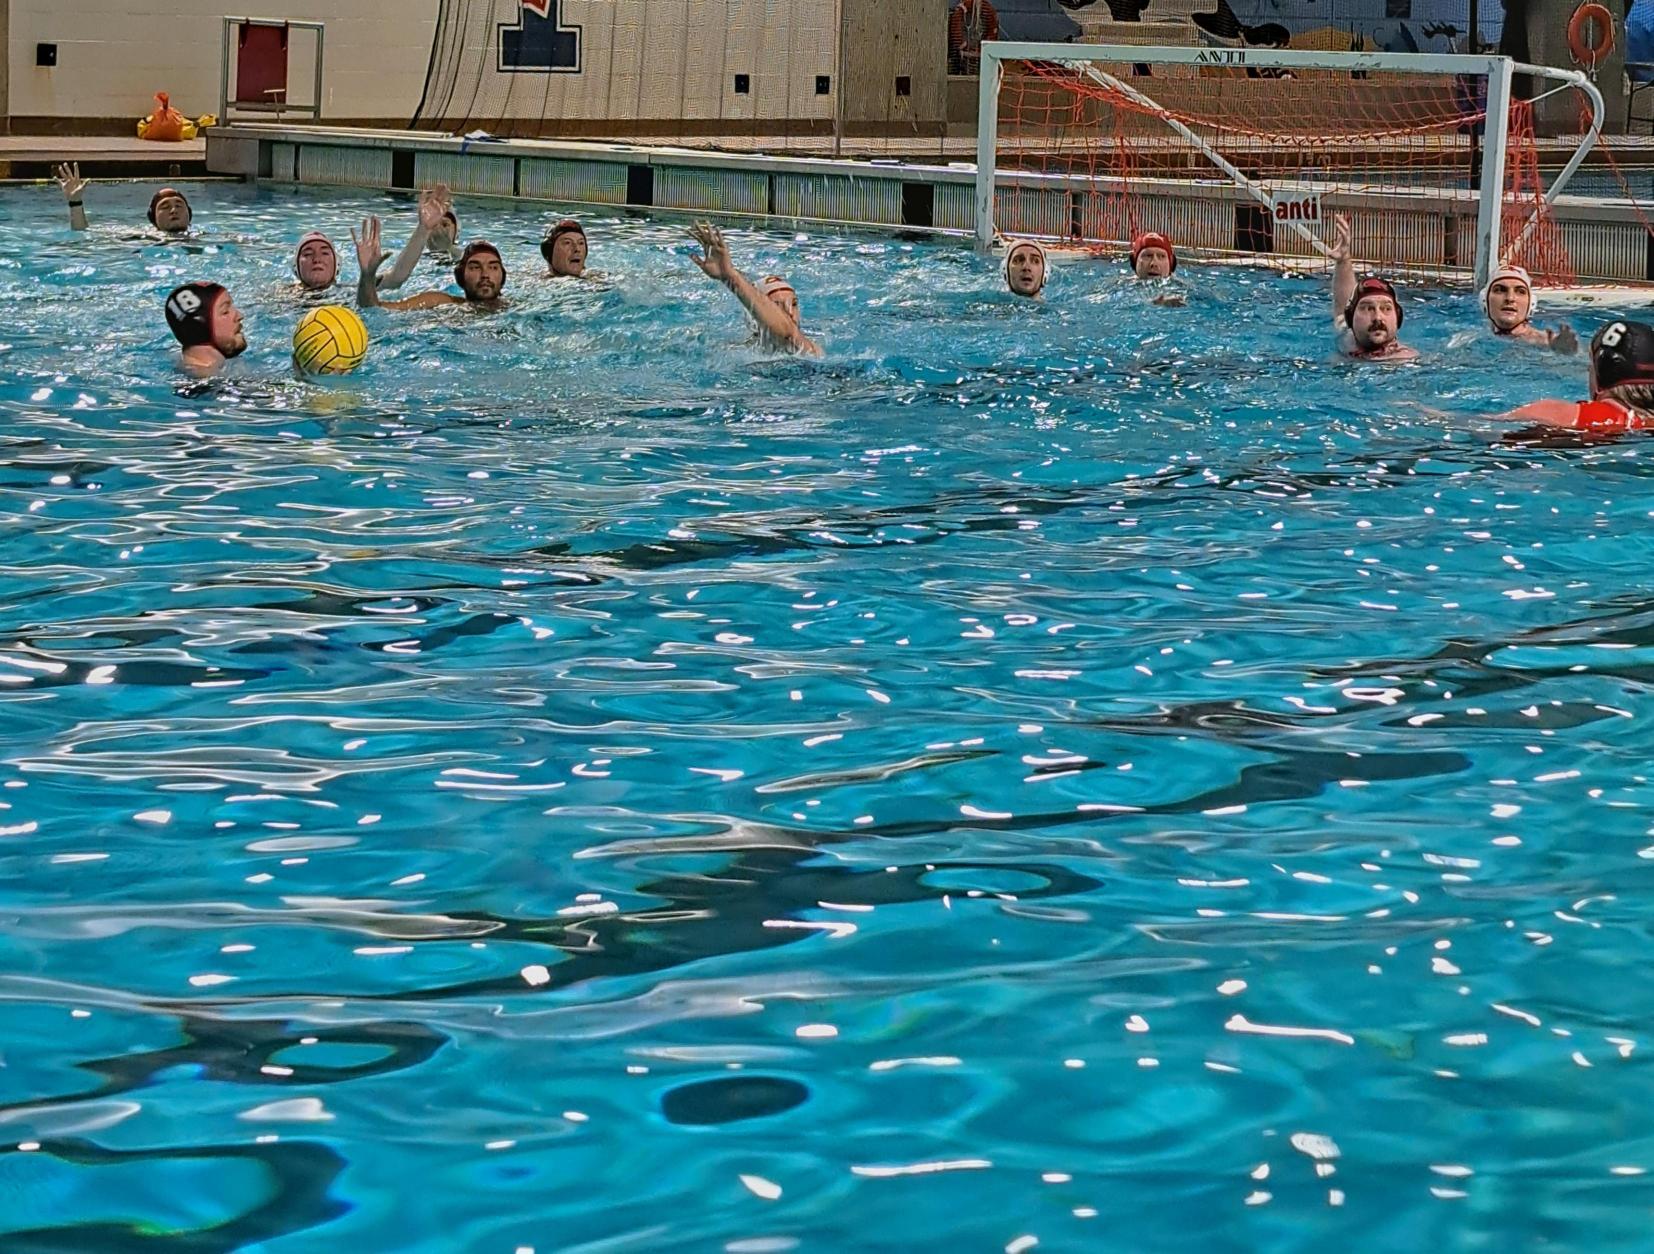 Des personnes jouent au water-polo dans une piscine intérieure.